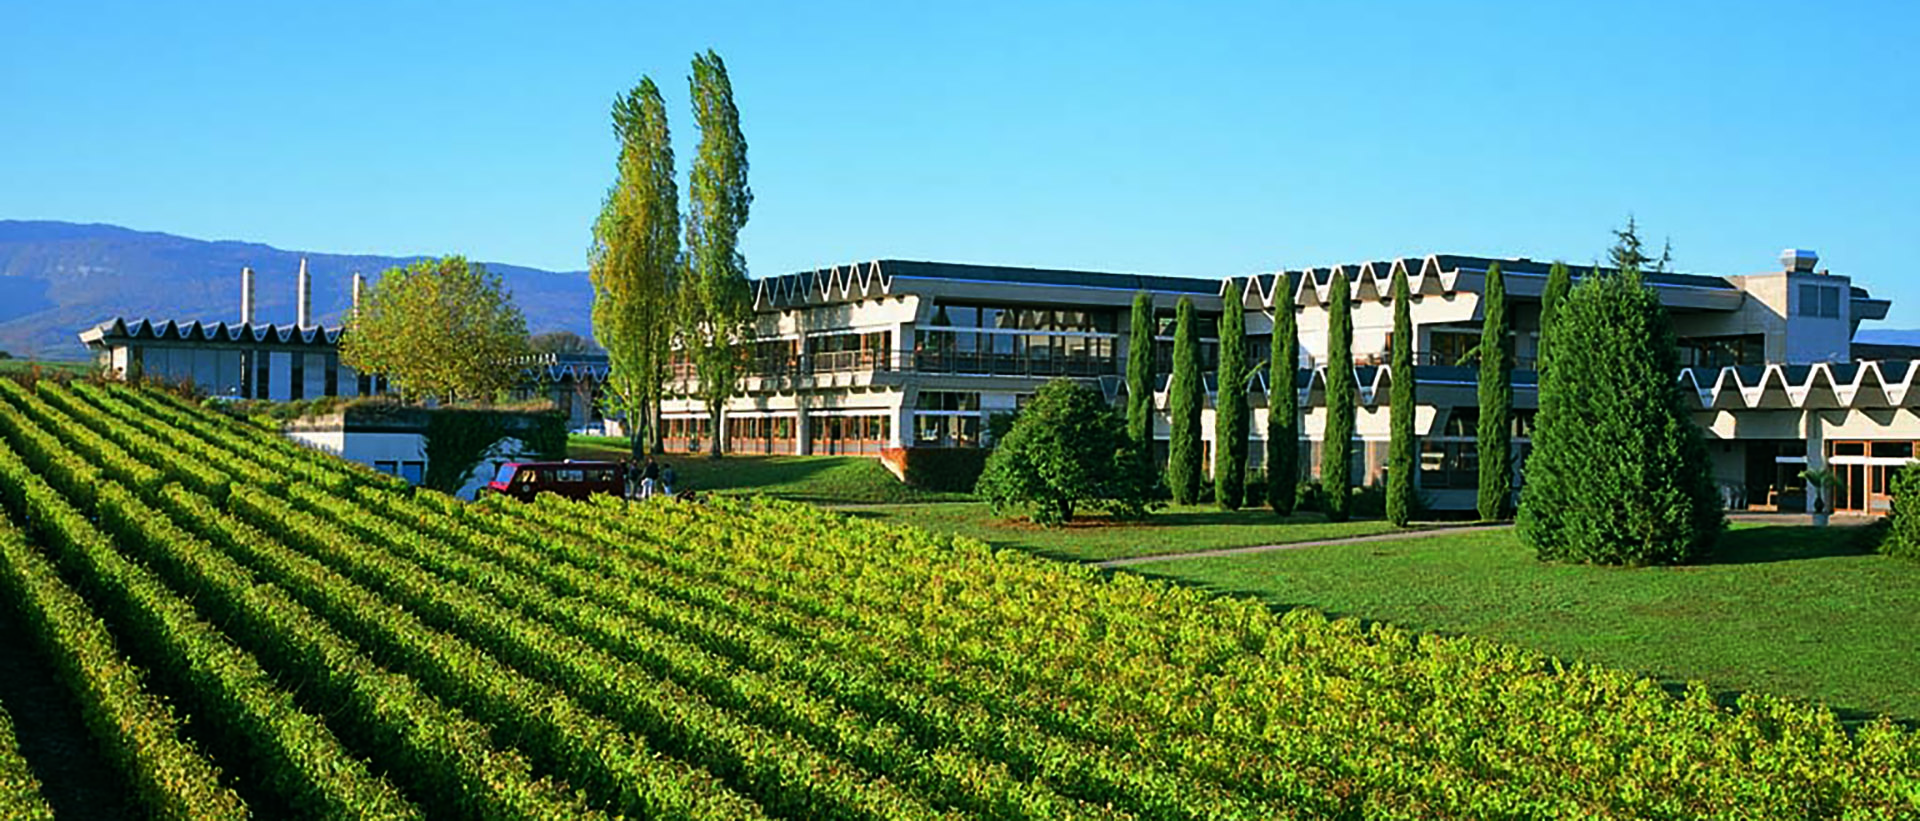 Changins – Haute école de viticulture et œnologie bâtiment